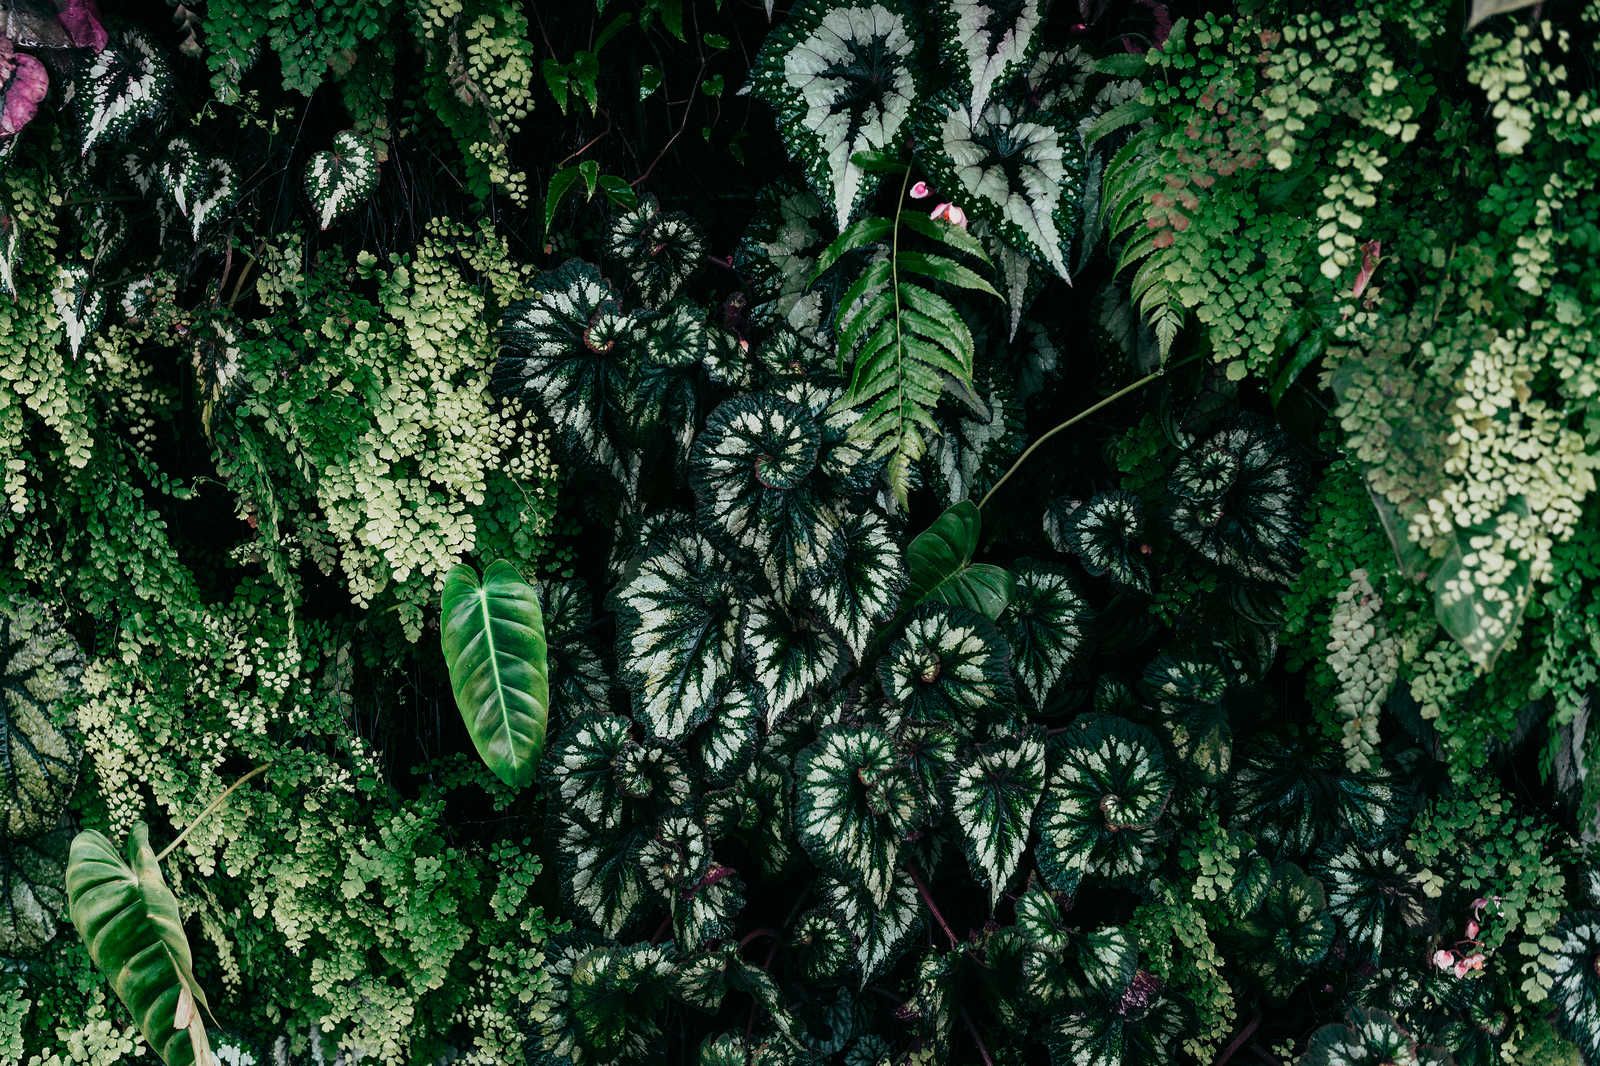             Deep Green 2 - Toile Fourrés de feuilles, fougères & plantes suspendues - 0,90 m x 0,60 m
        